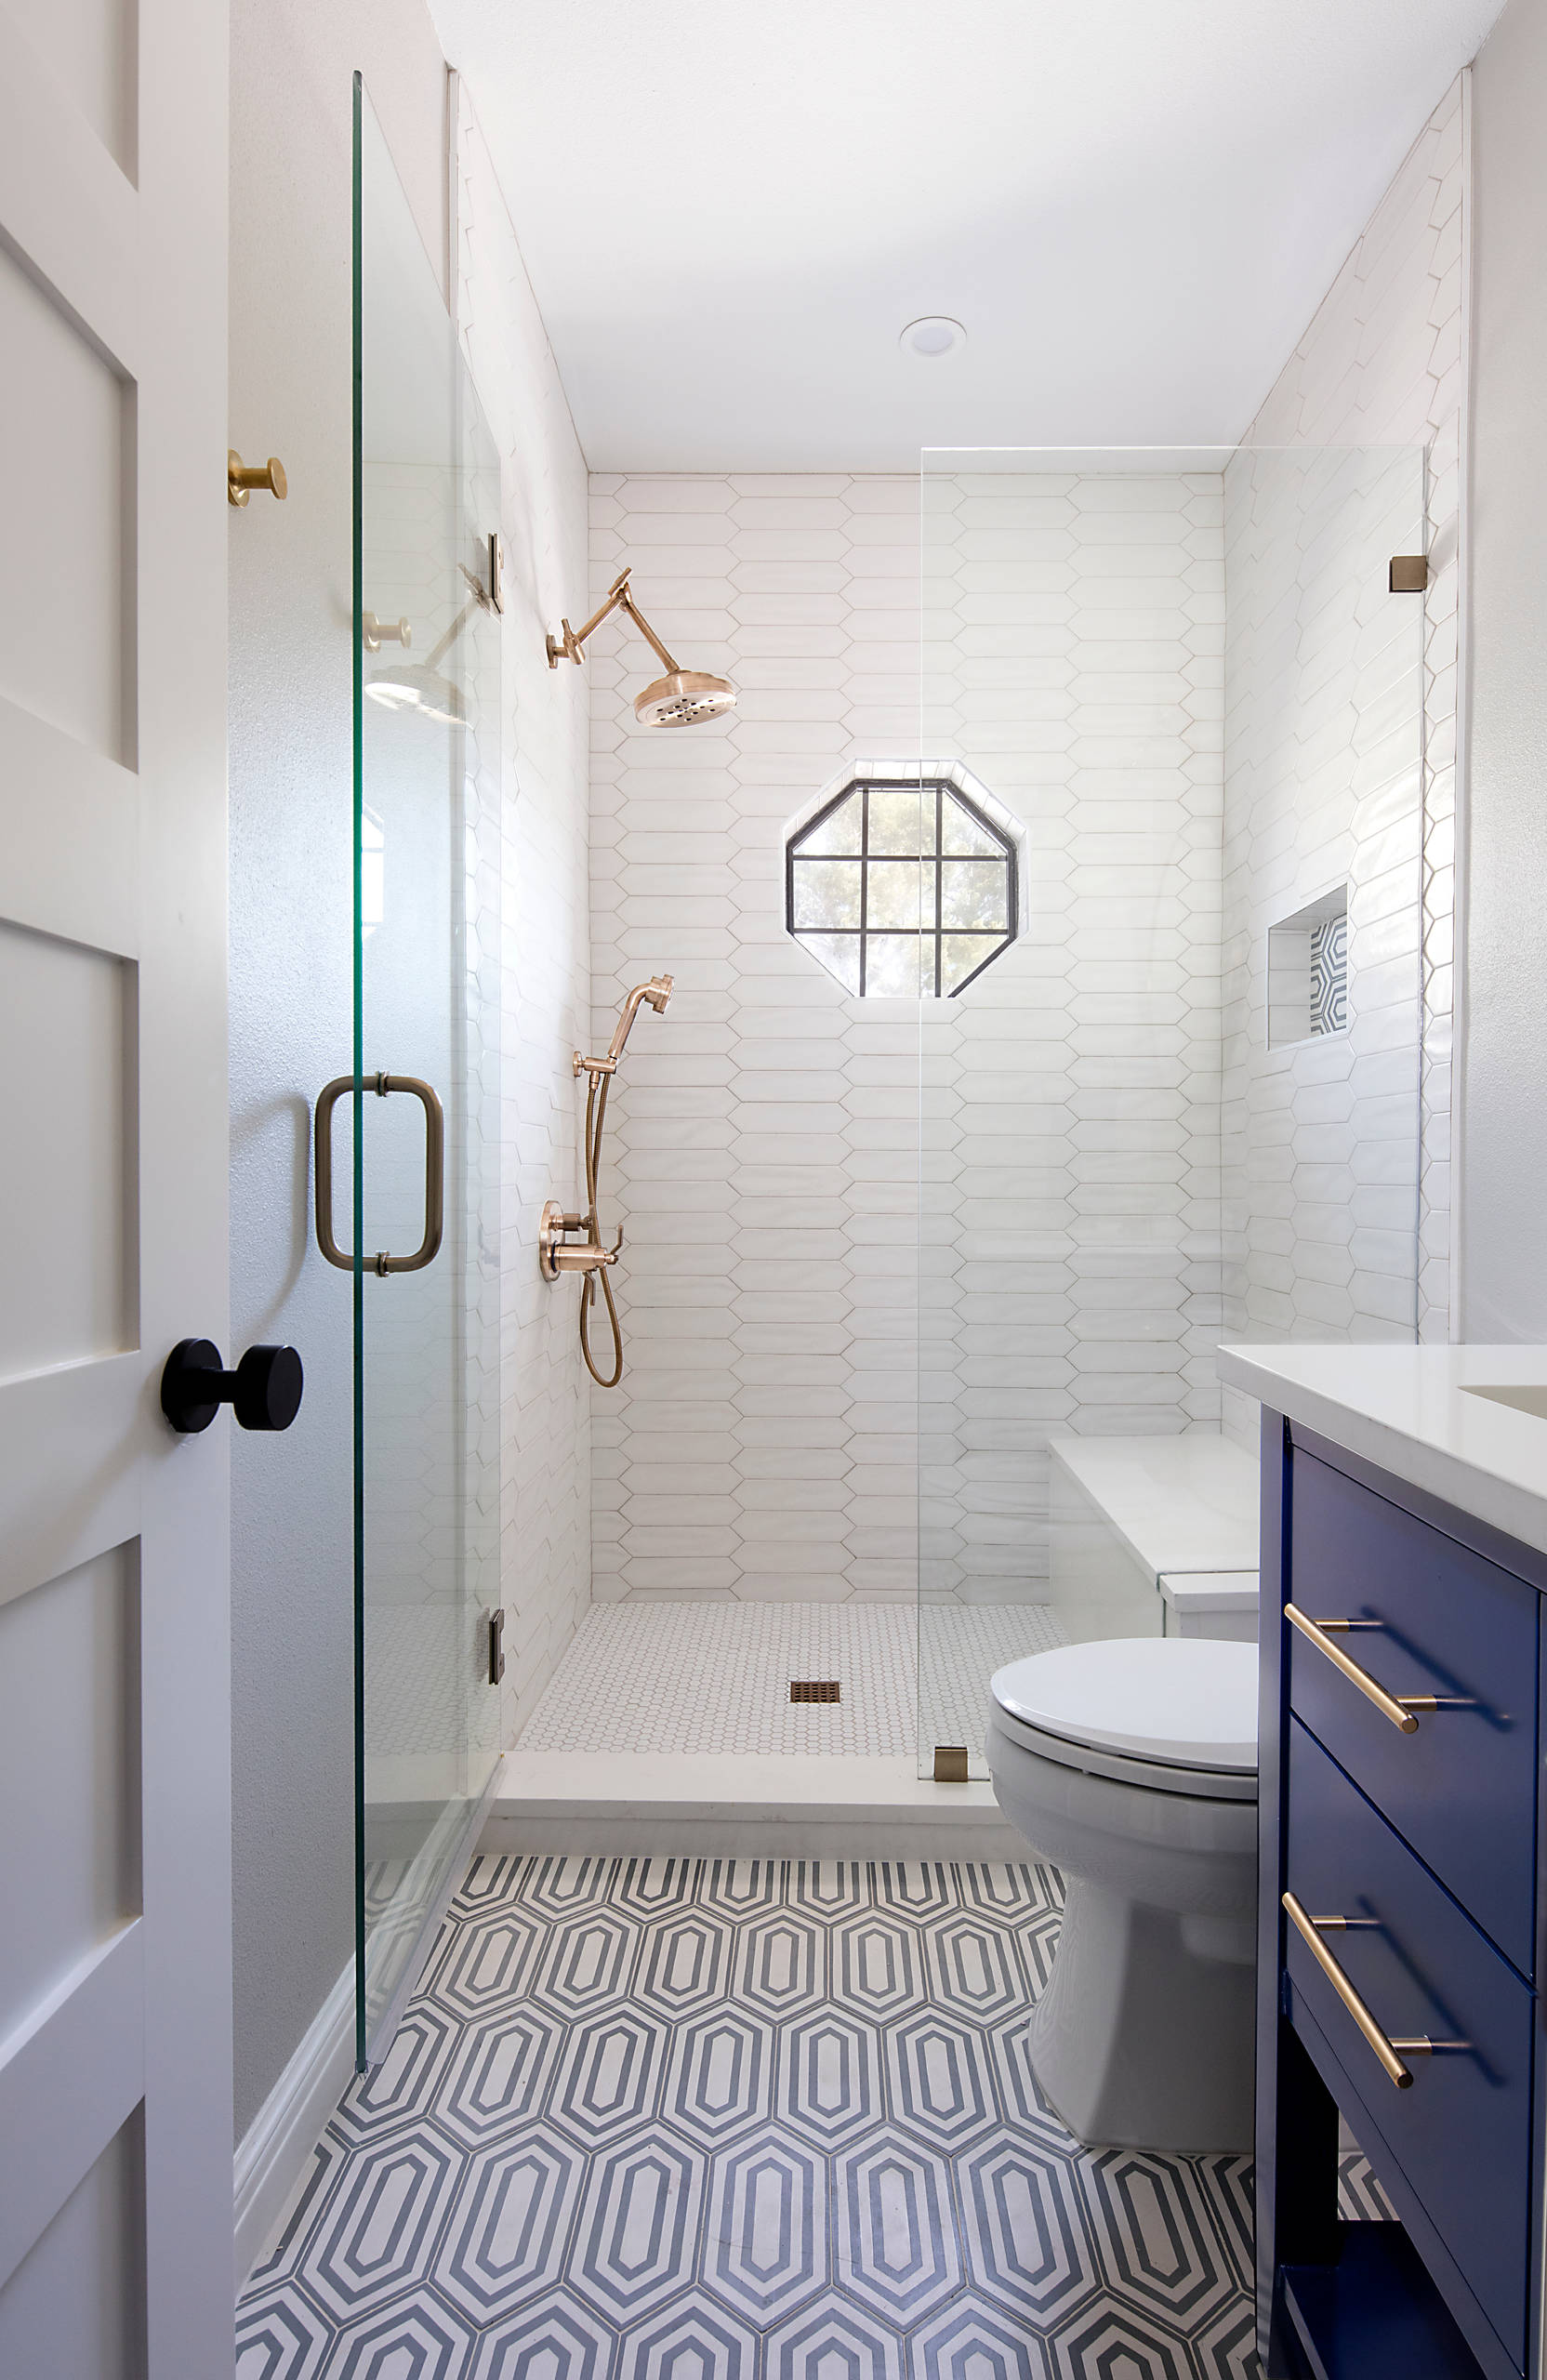 Small Bathroom Tile Design Houzz,Kelly Wearstler Office Design